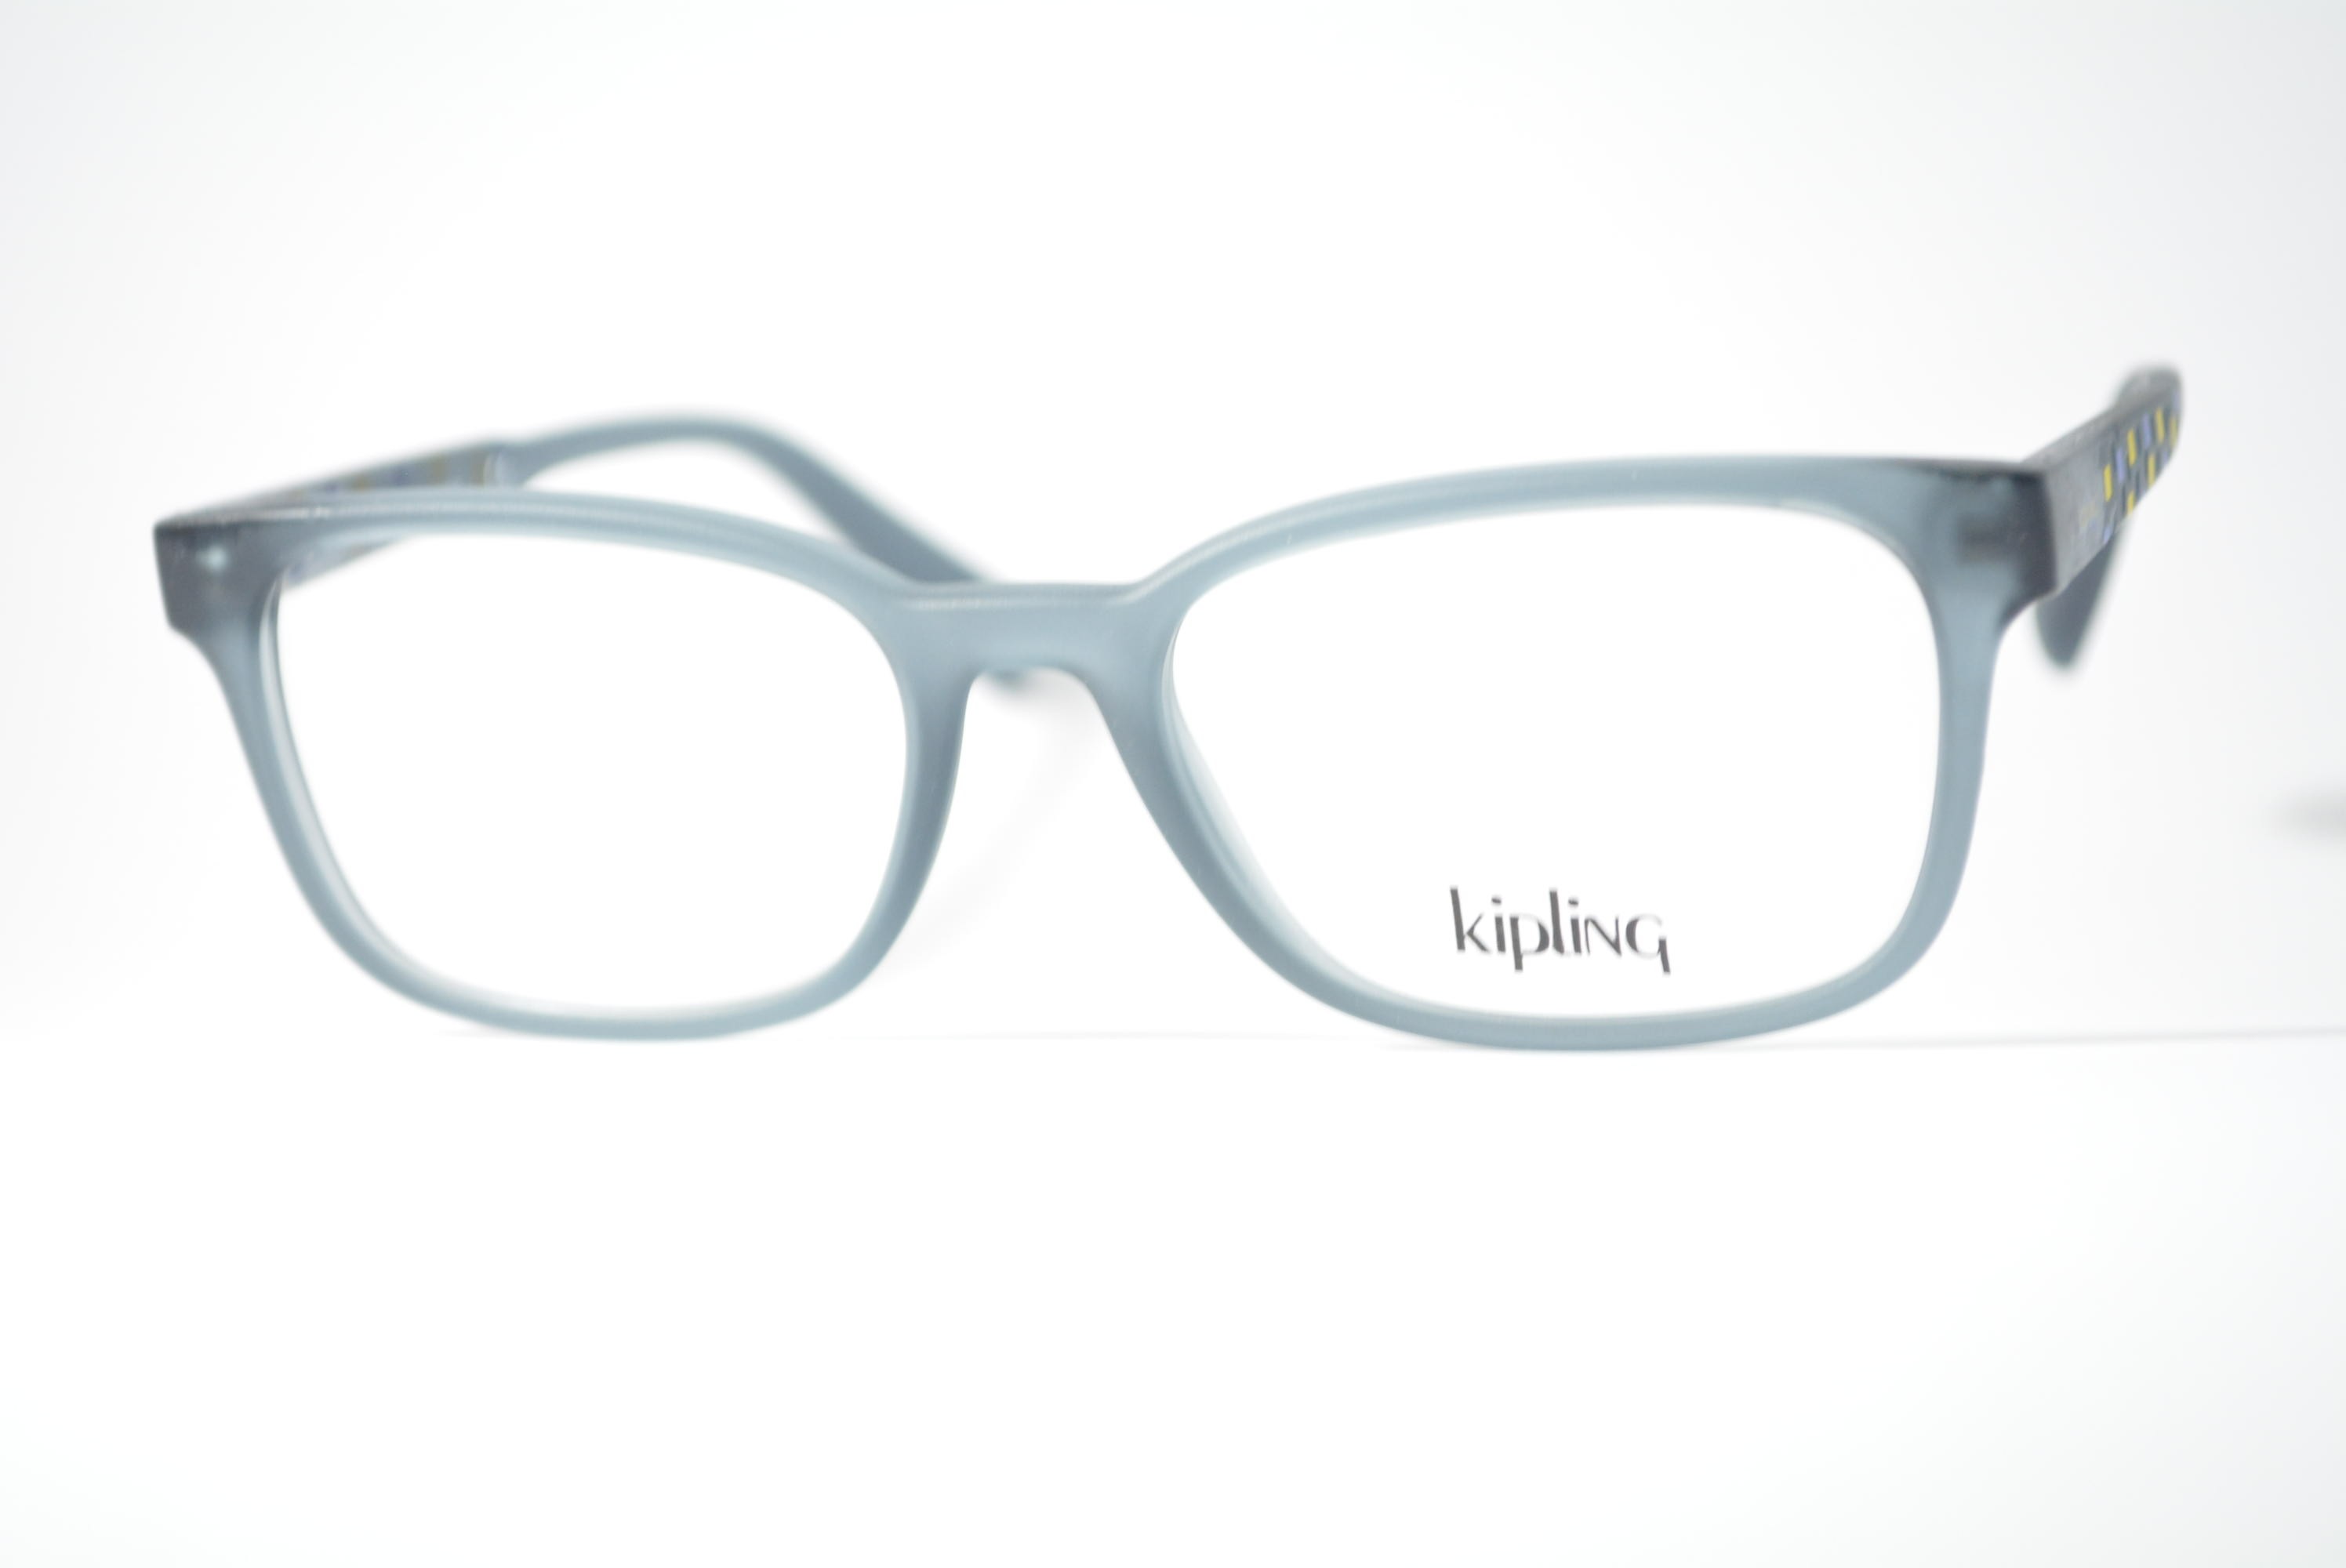 armação de óculos Kipling Infantil mod kp3158 k183